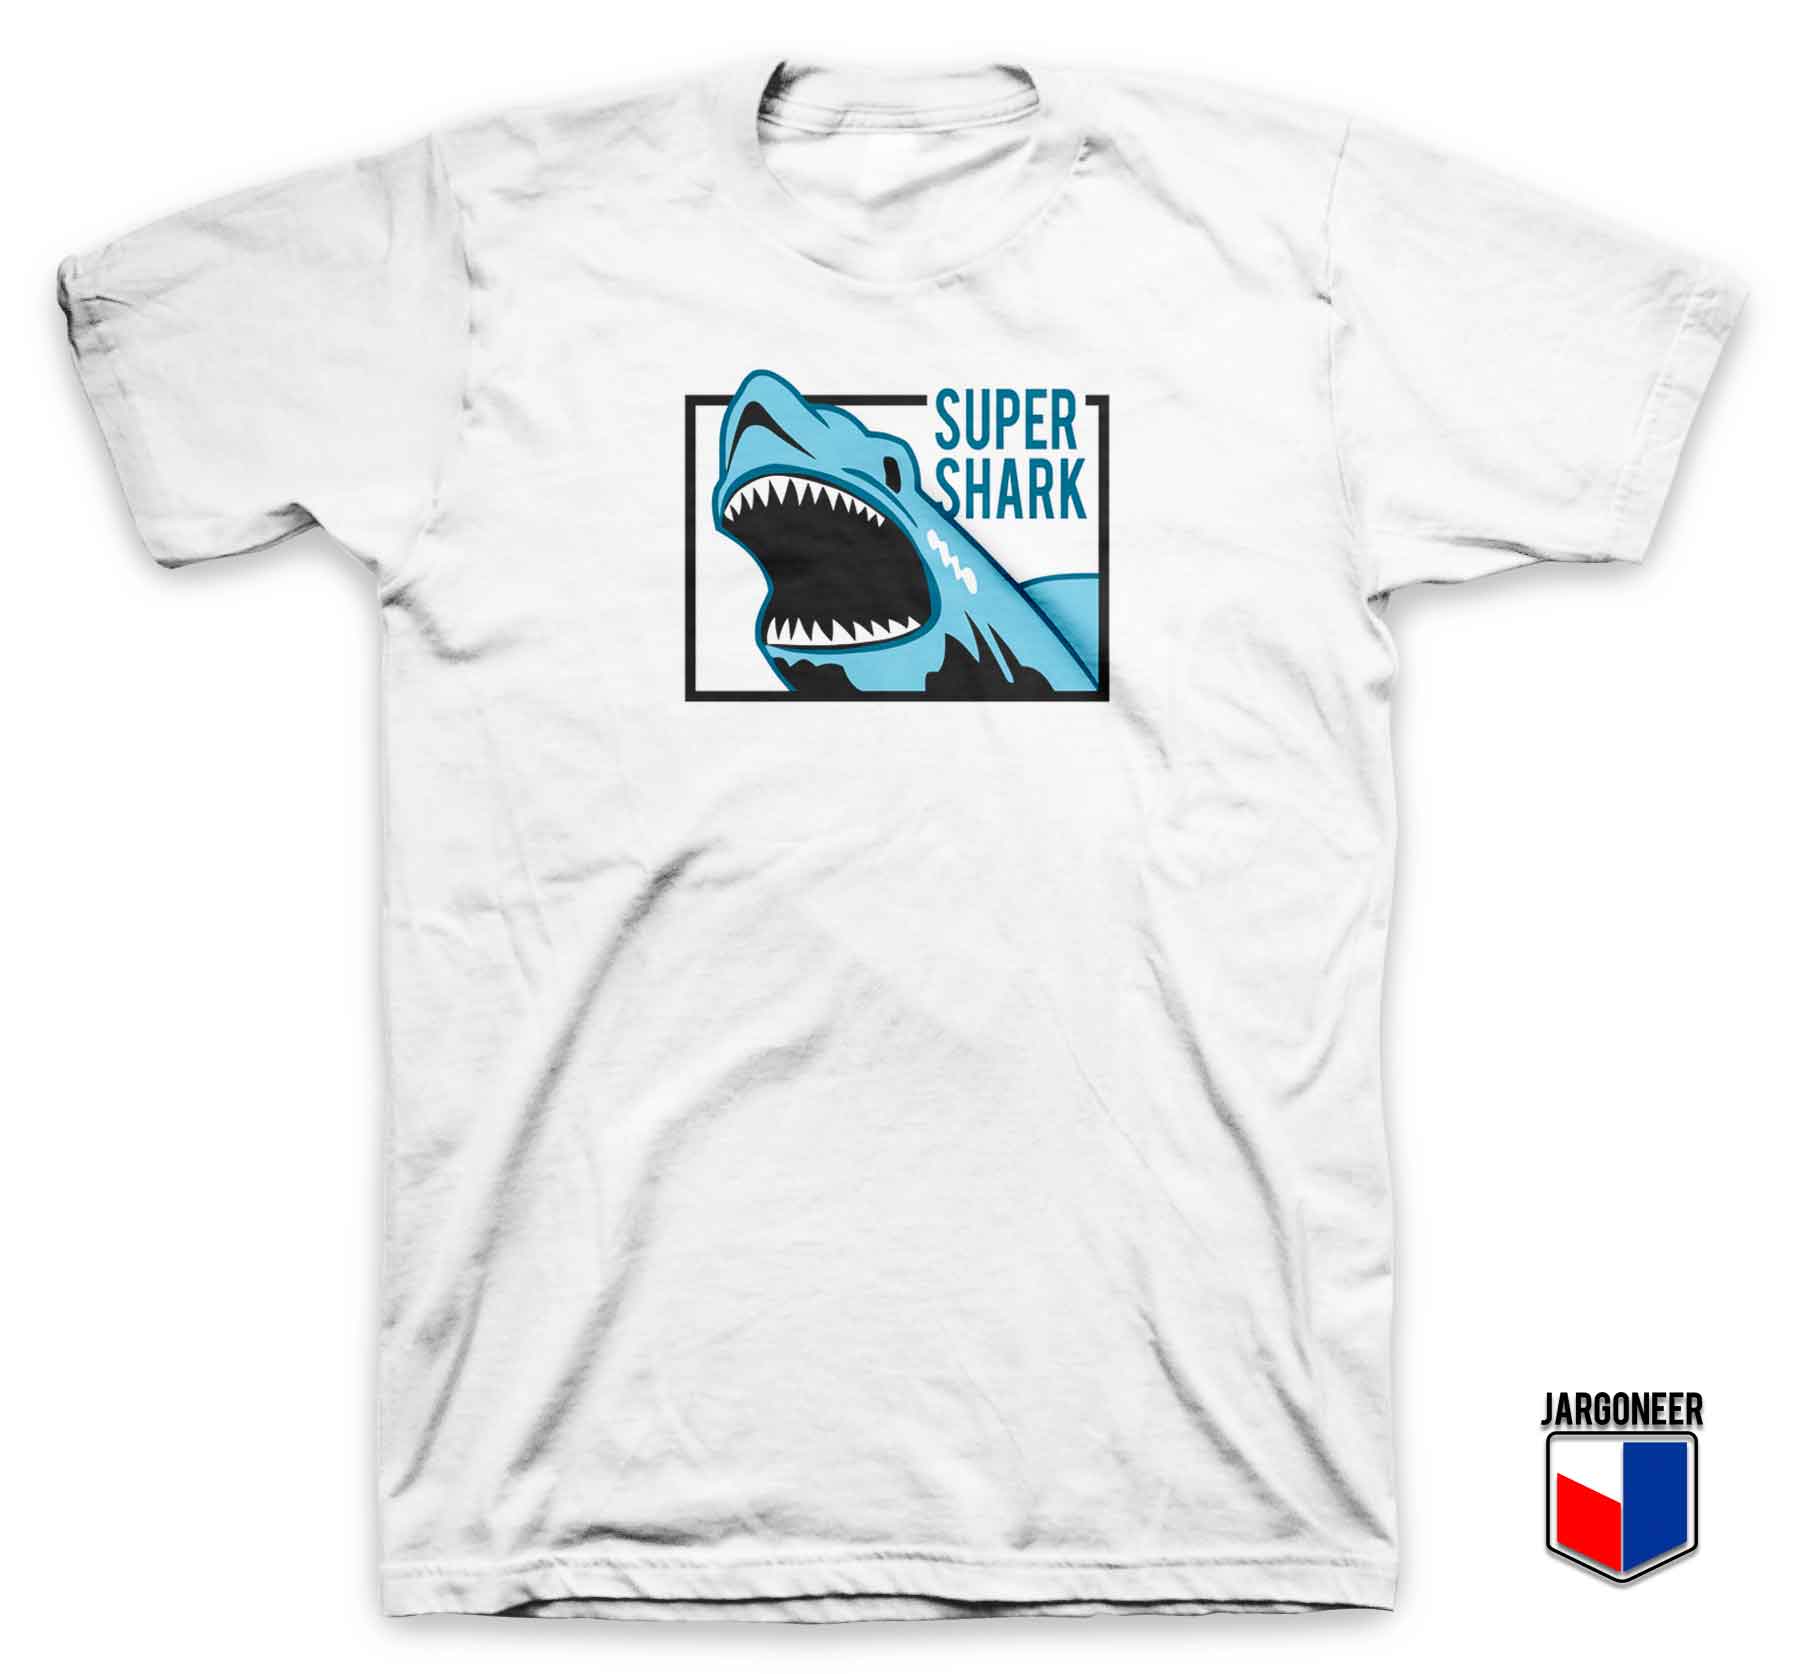 Super Shark Blondie T Shirt - Shop Unique Graphic Cool Shirt Designs